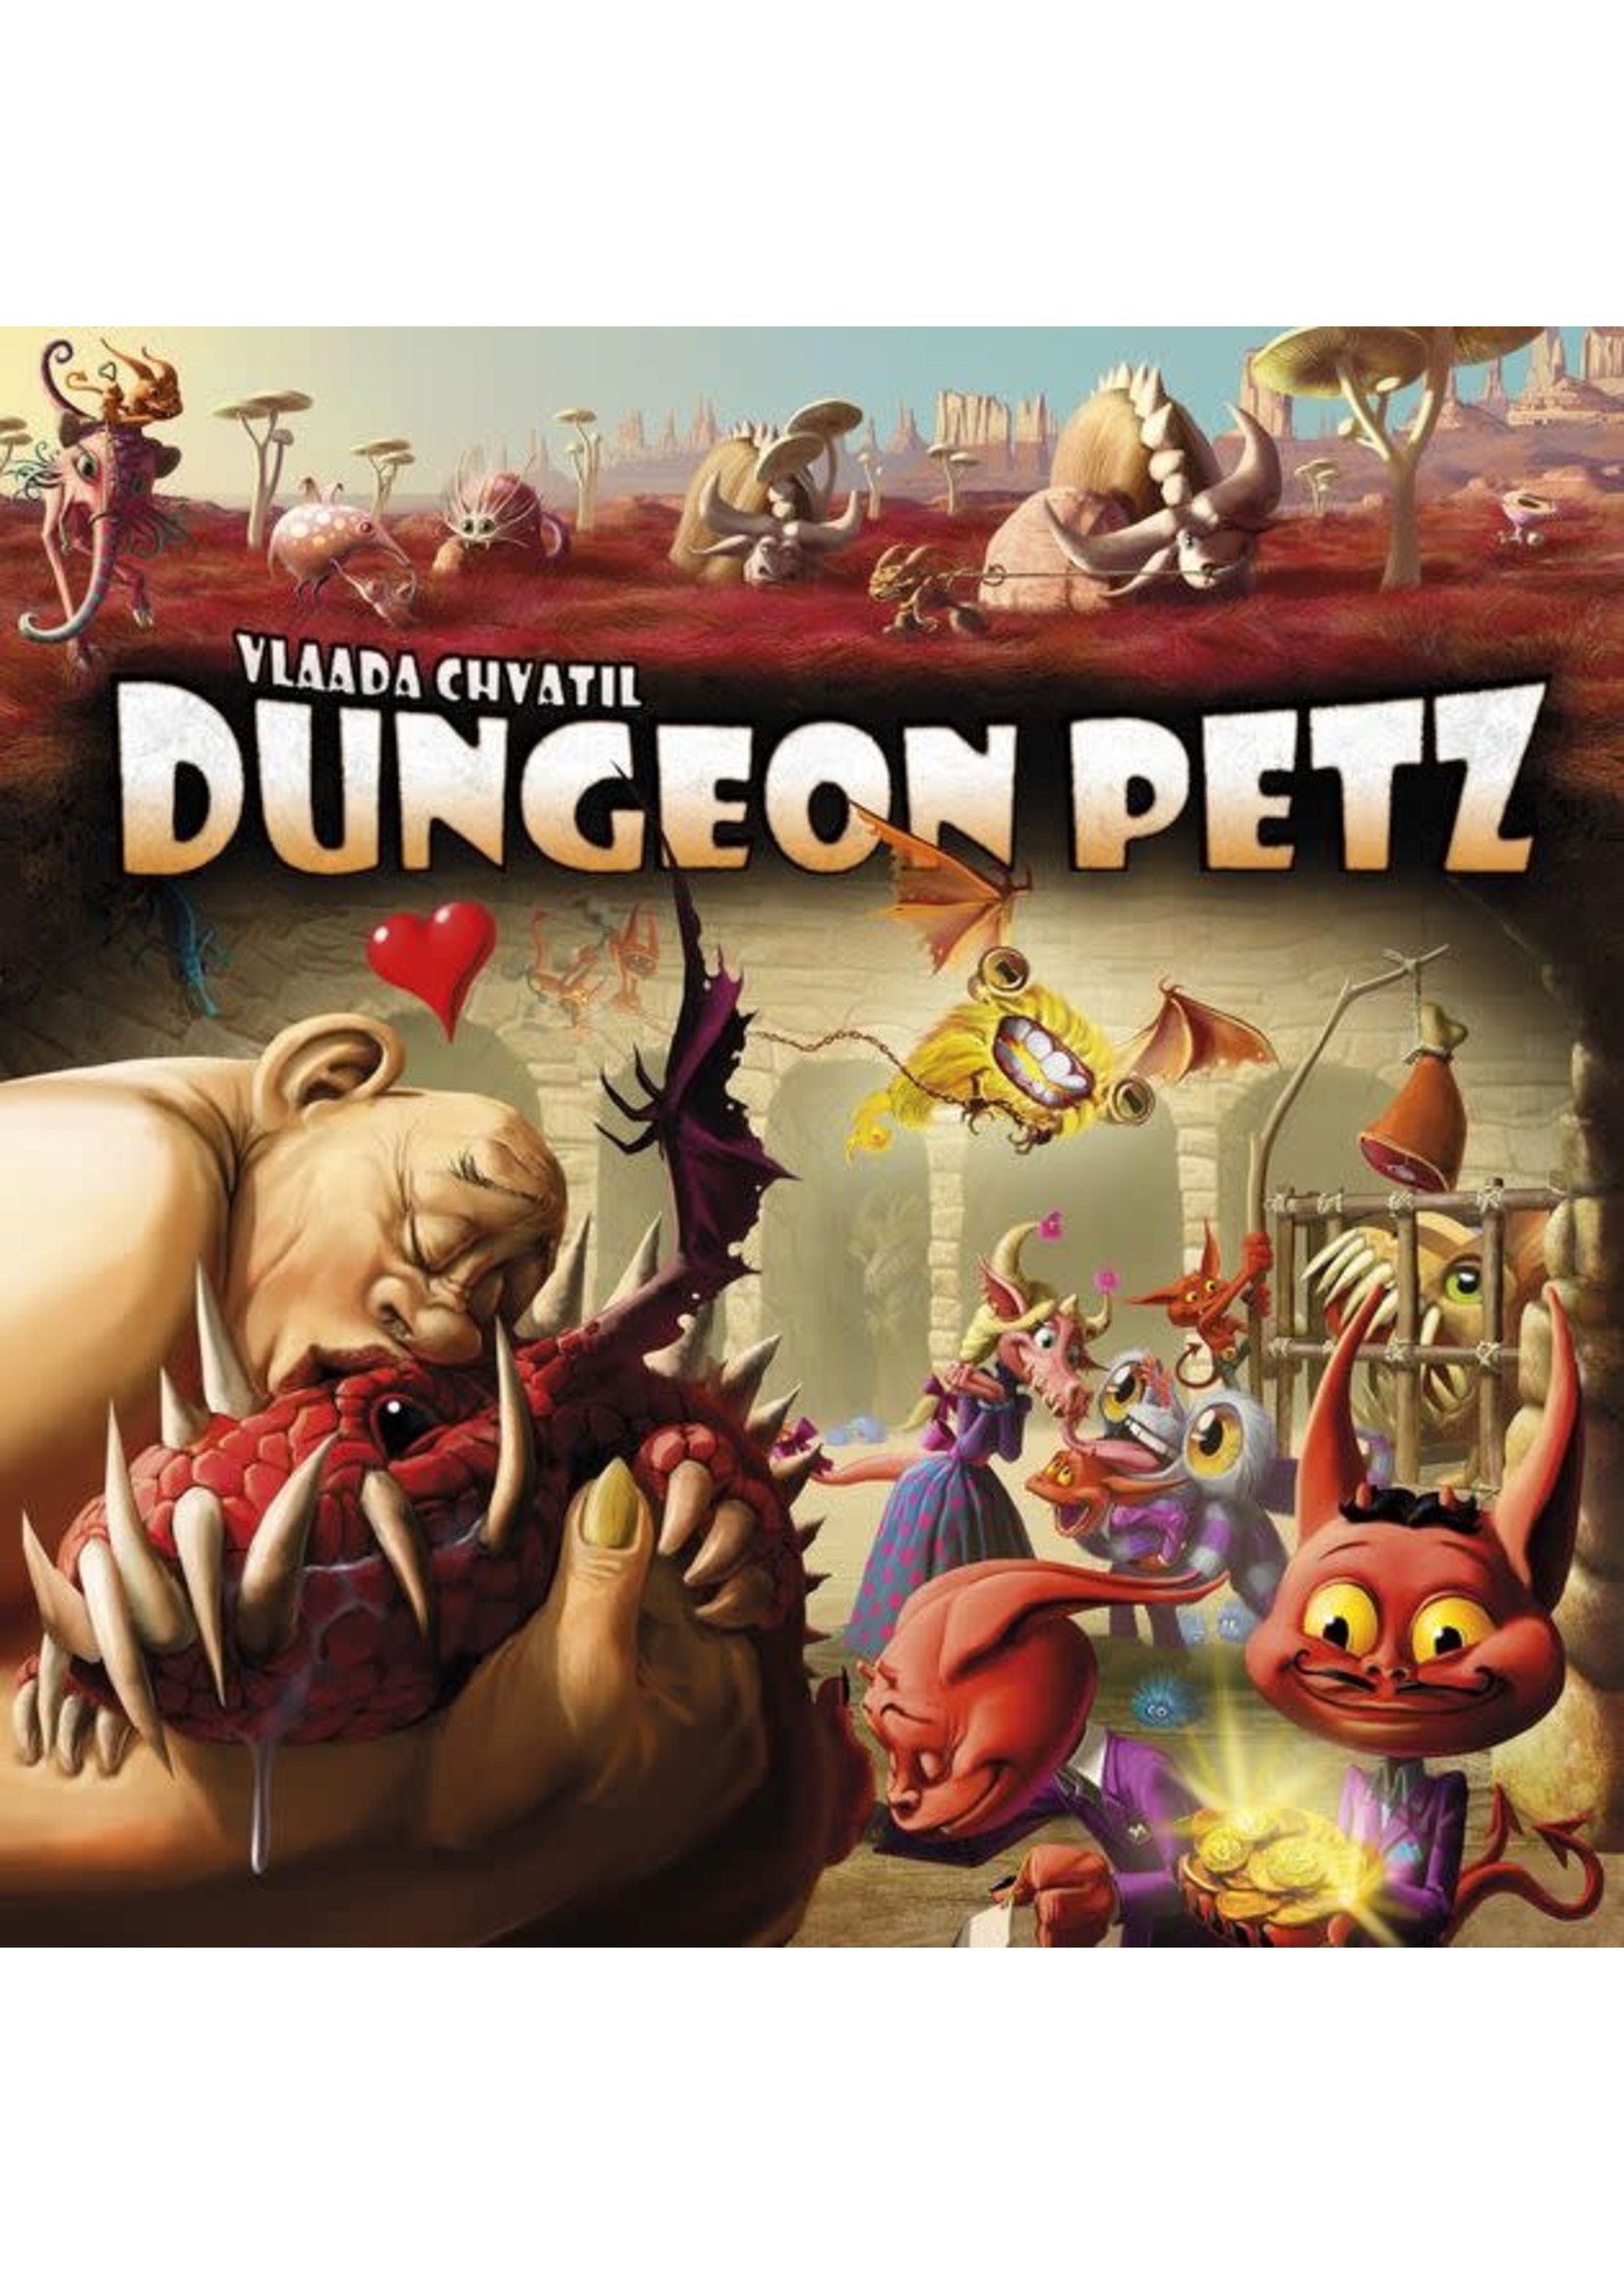 Rental RENTAL - Dungeon Petz 3lb 9.8 oz